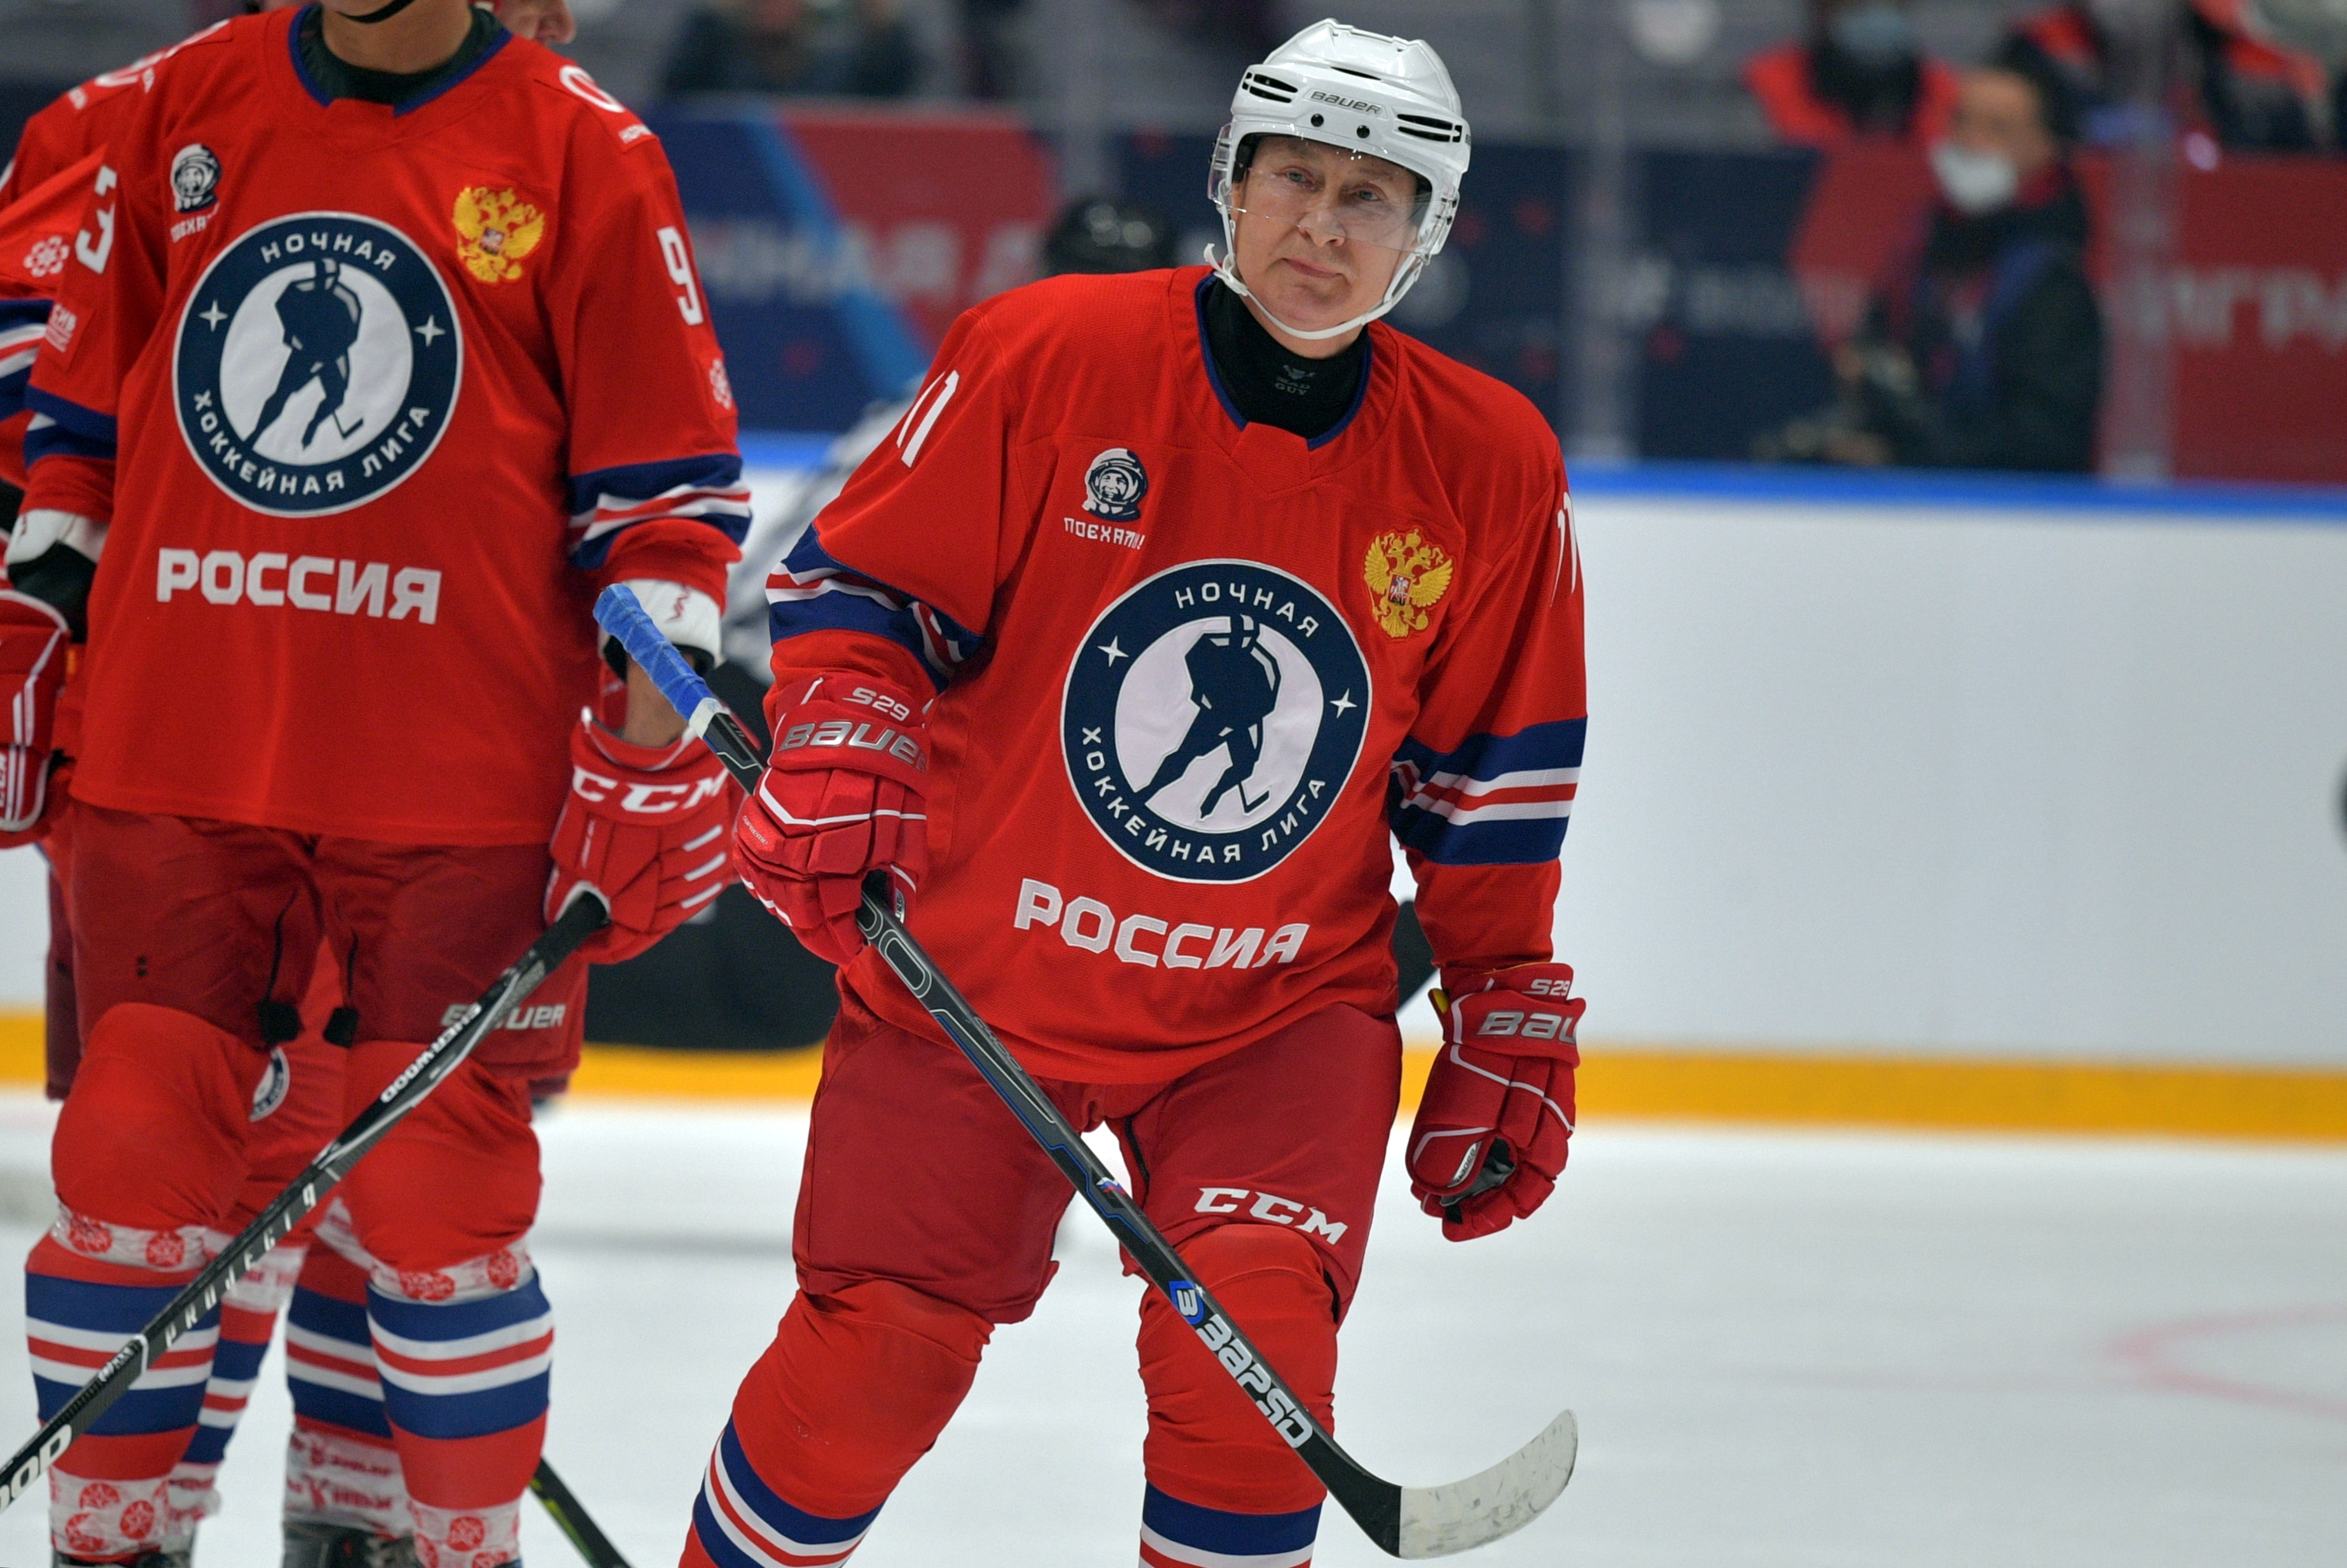 El hockey es para Vladimir Putin algo político, y suele participar en juegos de la liga profesional para aumentar su popularidad.  Sputnik/Alexei Druzhinin/Kremlin via REUTERS ATTENTION EDITORS - THIS IMAGE WAS PROVIDED BY A THIRD PARTY.